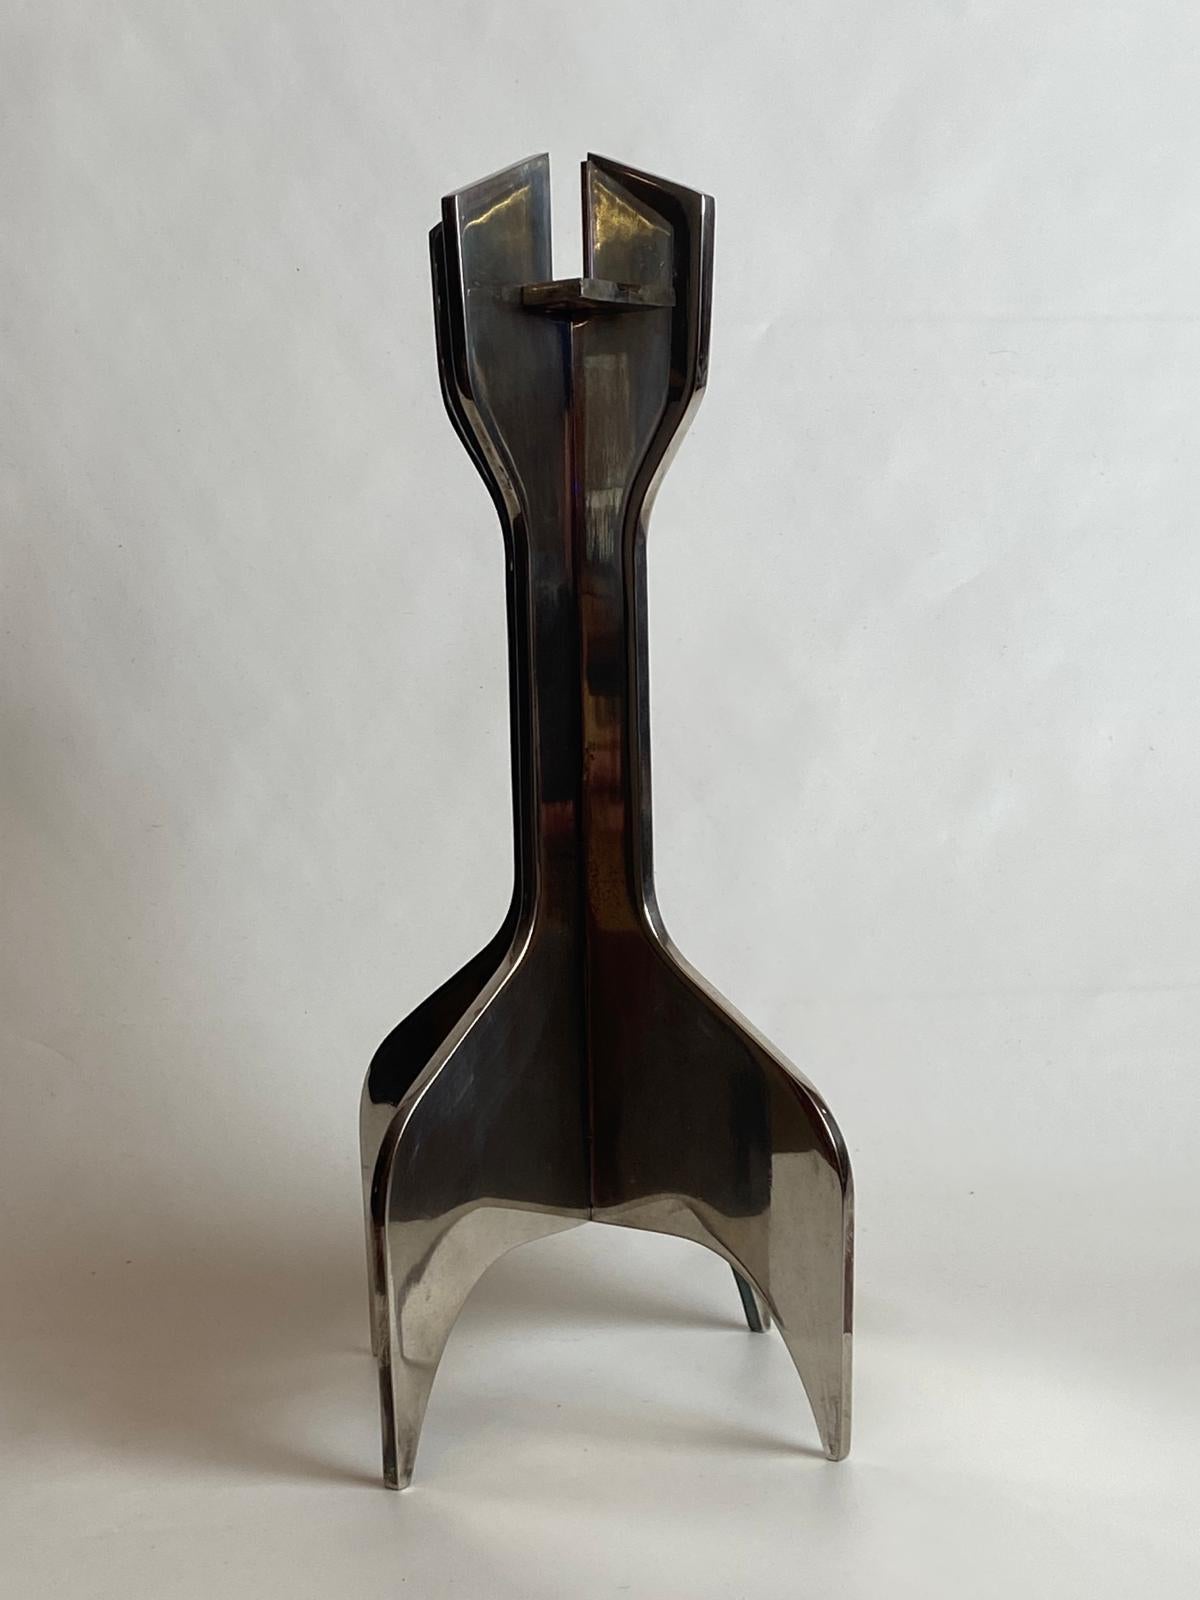 Bougeoir conçu par Marcel Breuer et produit par Gavina, vers 1963
Bougeoir sculptural d'une élégance intemporelle, datant des années 1960, créé par Marcel Breuer pour Gavina
Ce chandelier apporte une touche de design iconique et de sophistication à